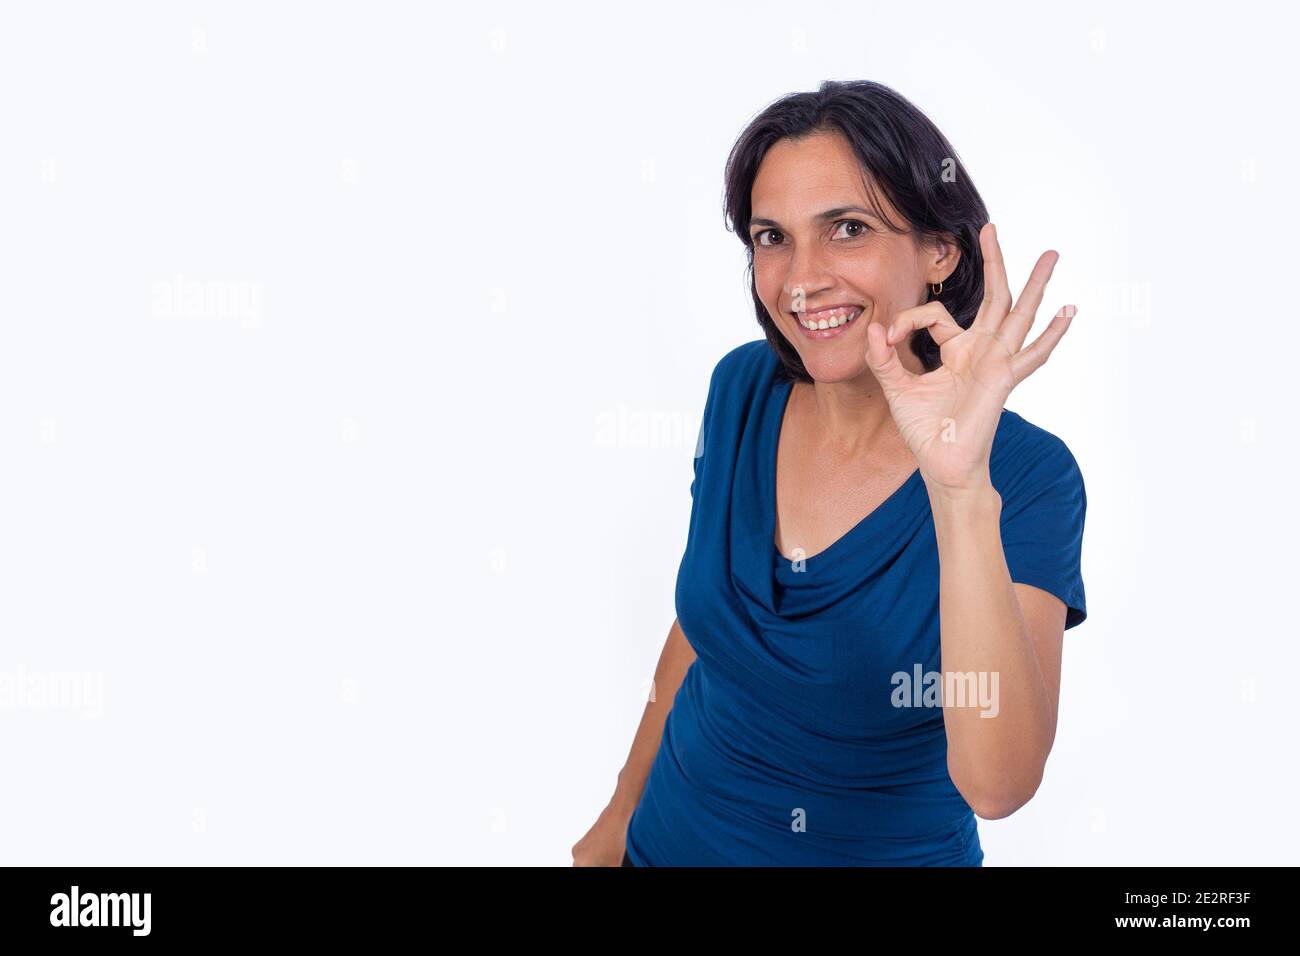 Femme souriante faisant le symbole ok avec sa main. Arrière-plan blanc Banque D'Images